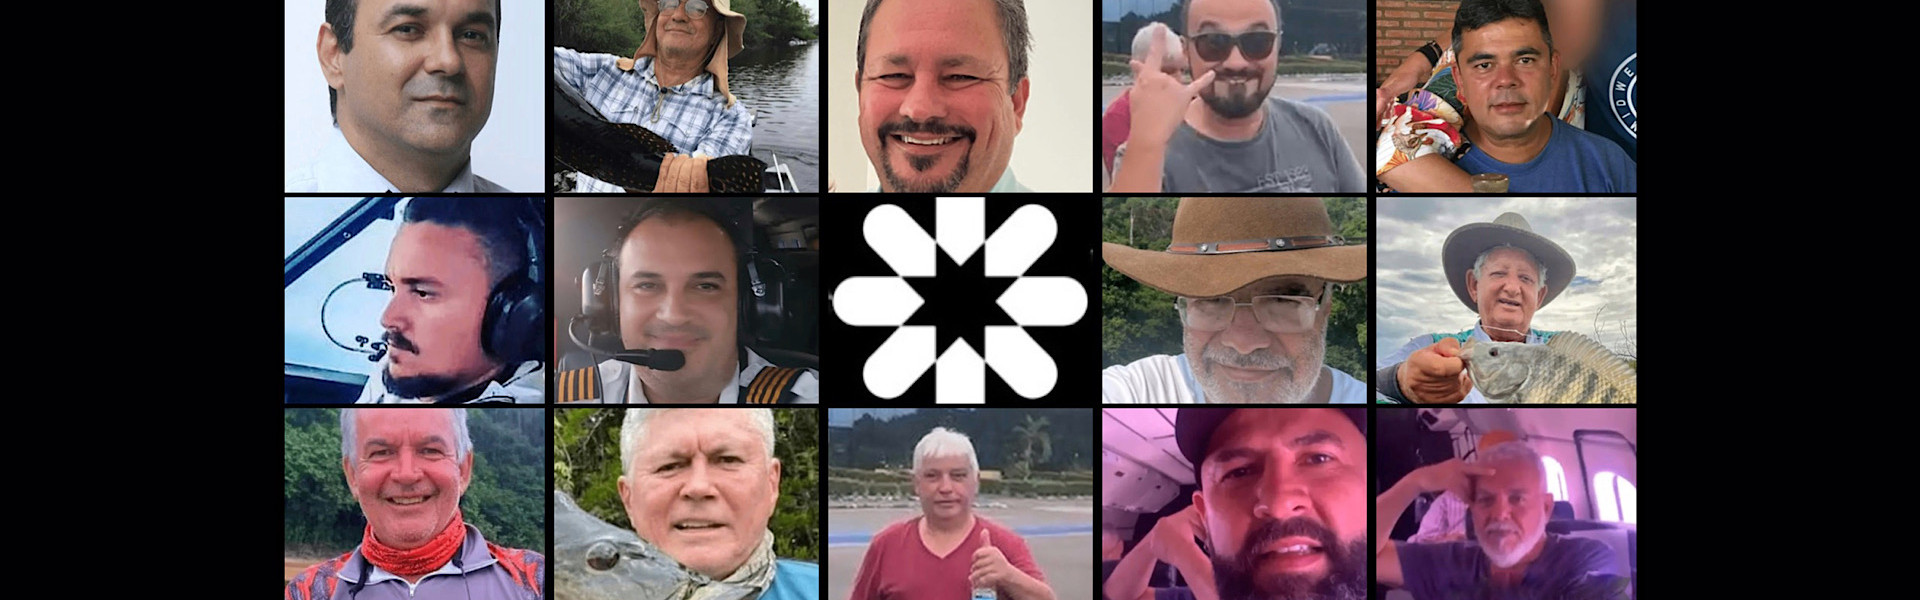 Luto na Pesca Esportiva: veja quem são as vítimas do acidente aéreo em Barcelos